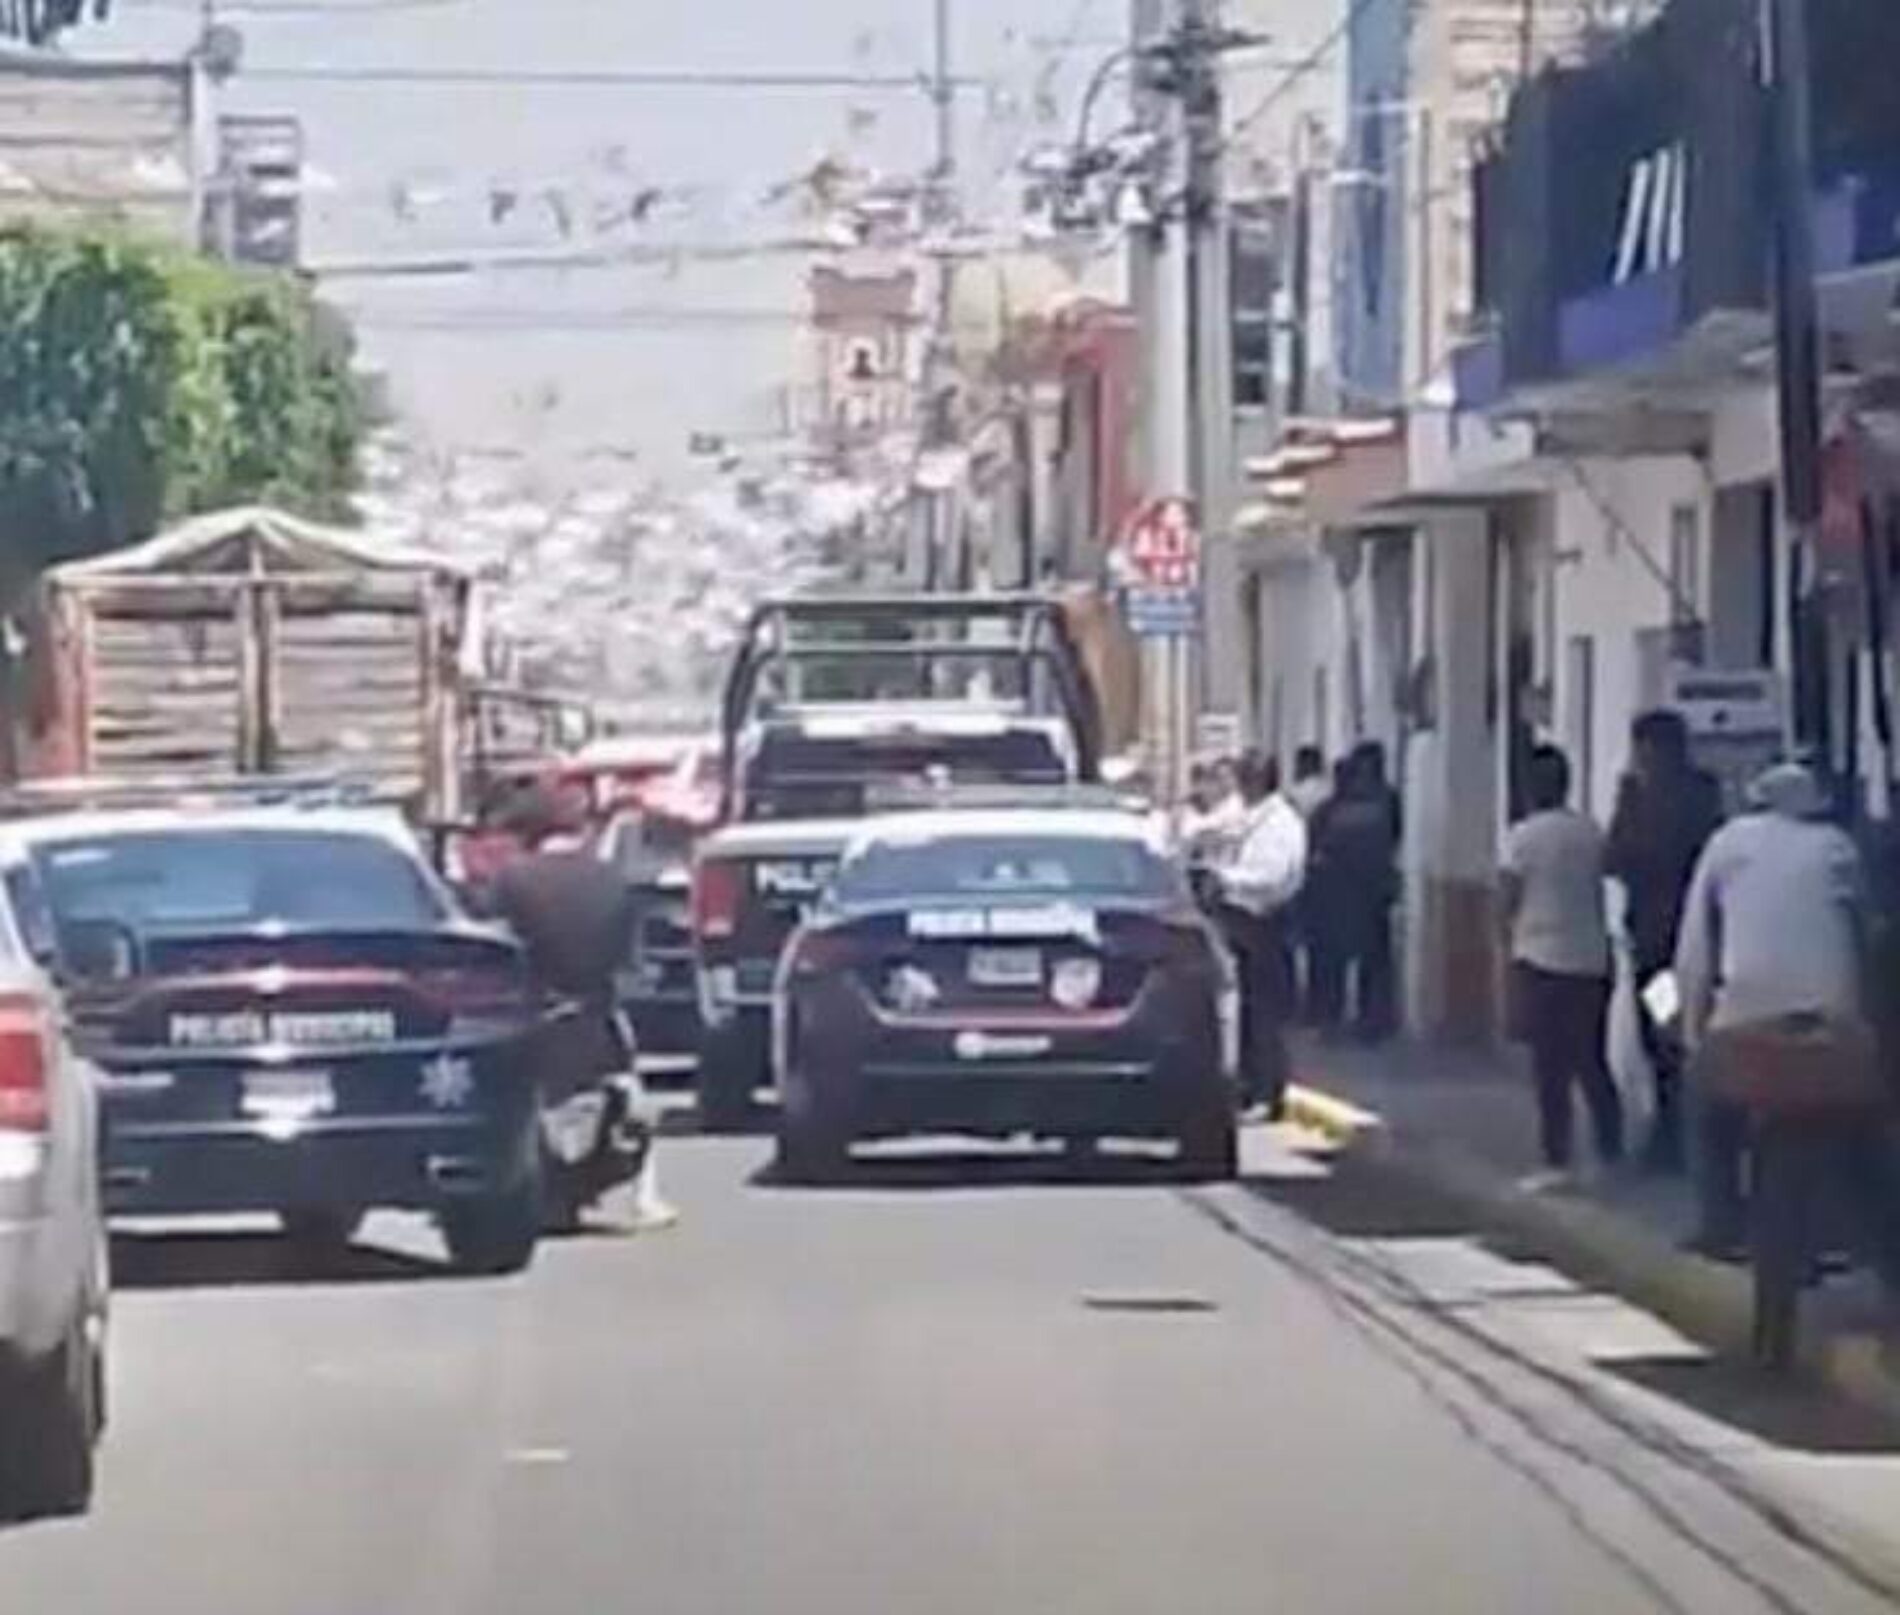 EN PERSECUCIÓN POLICIAS DE SAN ANDRÉS CHOLULA DETIENEN A 2 CAMIONETAS